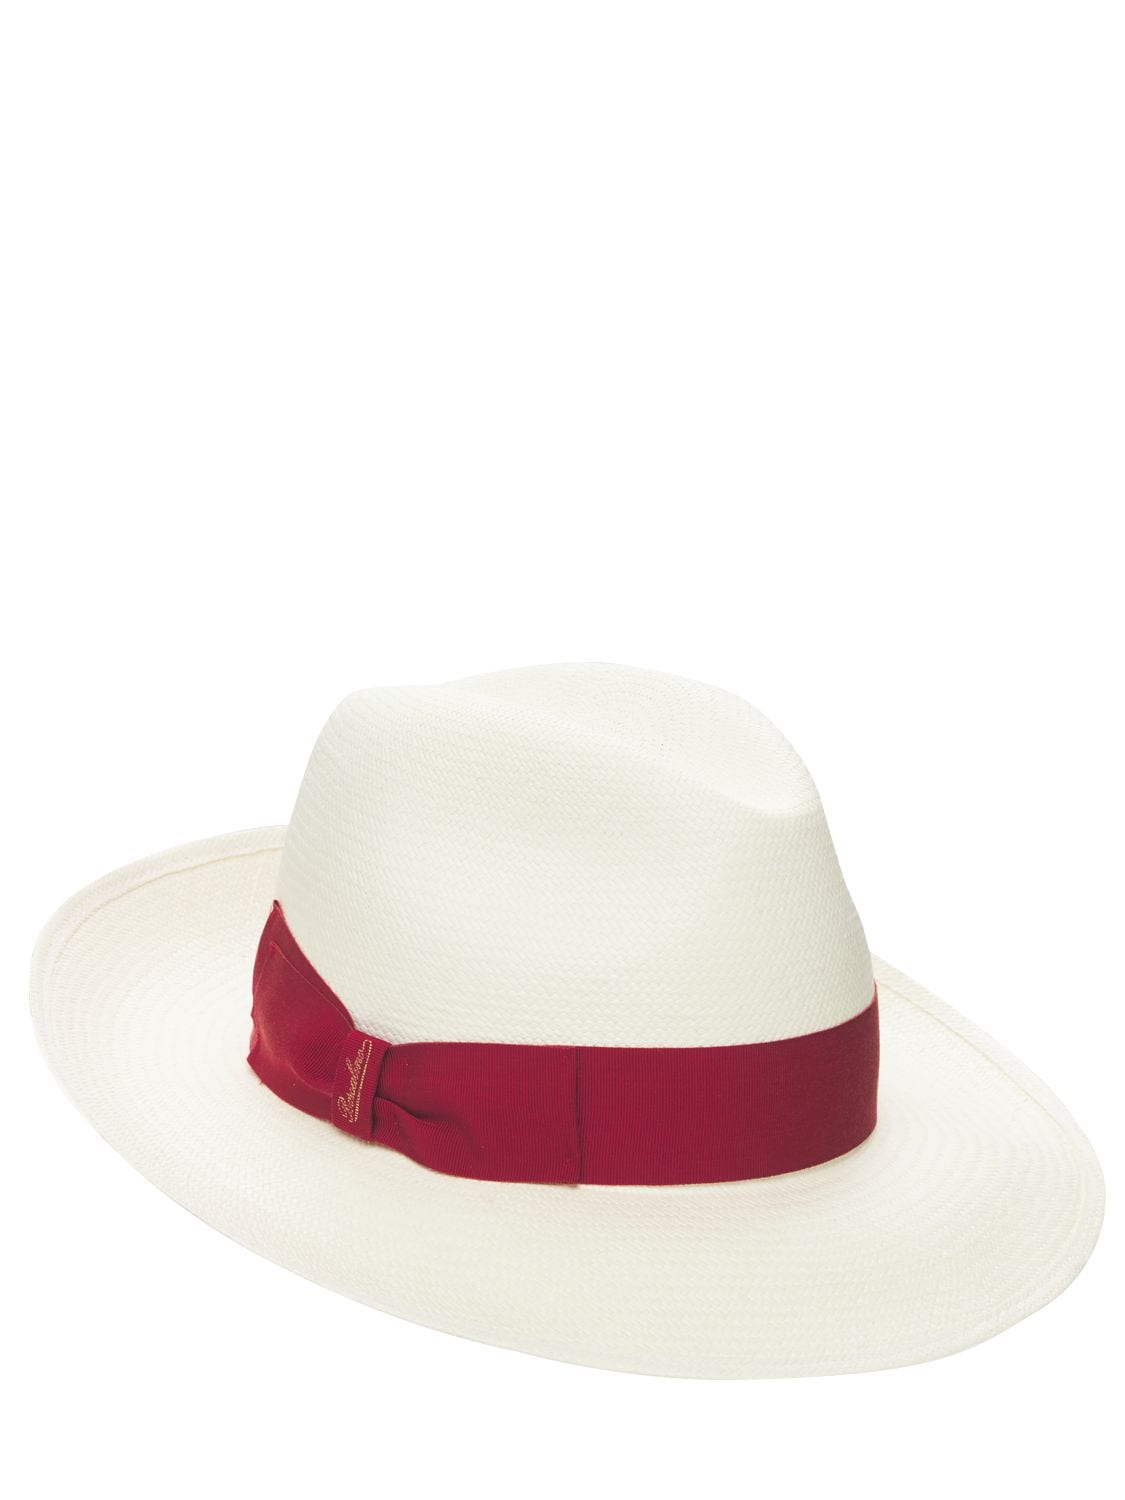 BORSALINO Giulietta Fine Panama Hat